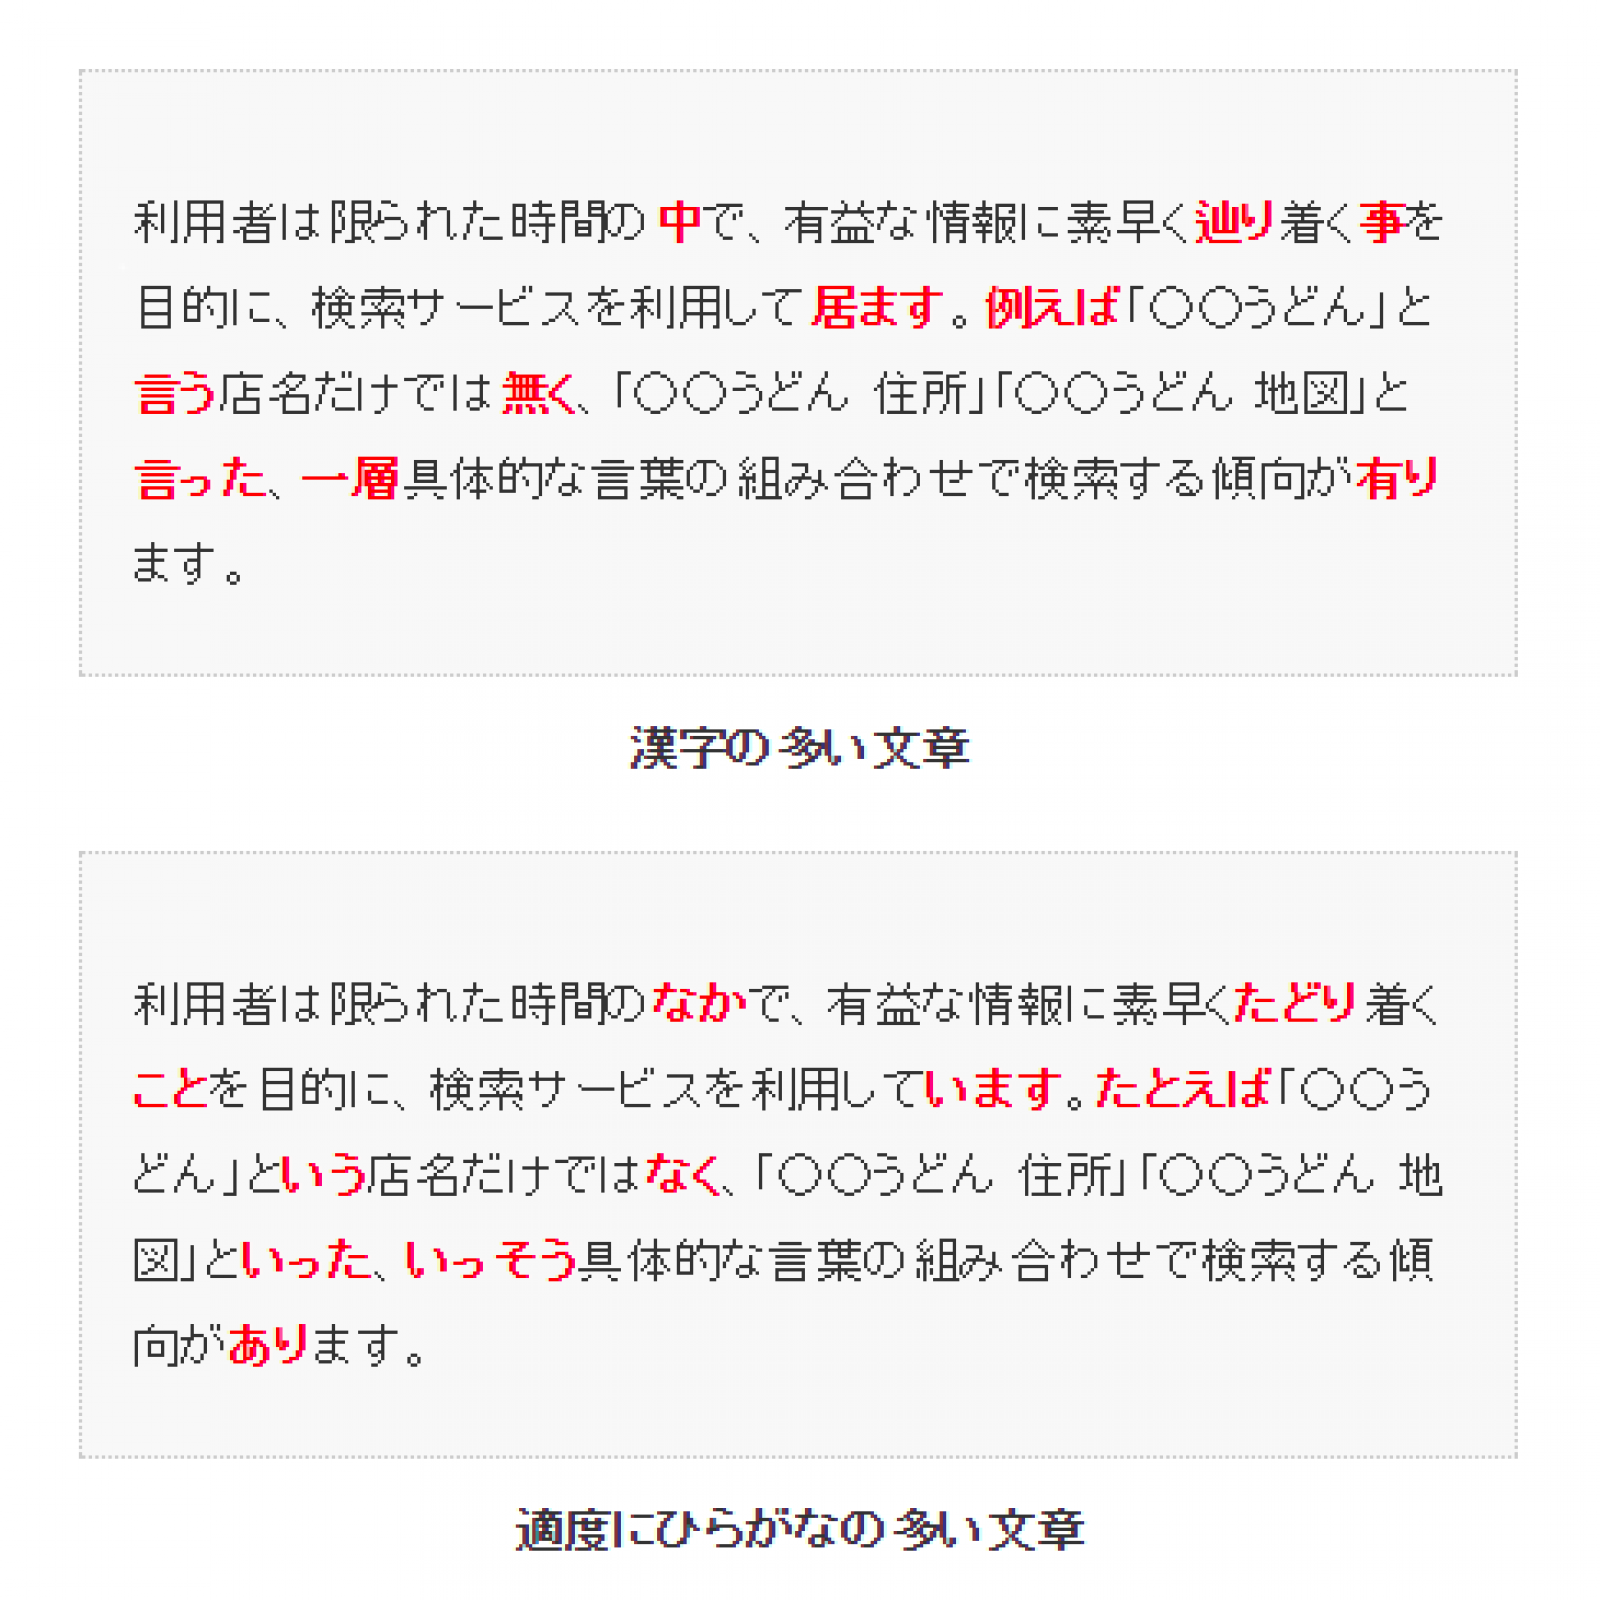 なかなか 漢字とひらがな使い分けはどうすべき 一般的ルール164例 Web文章入門 全7回 Web担当者forum